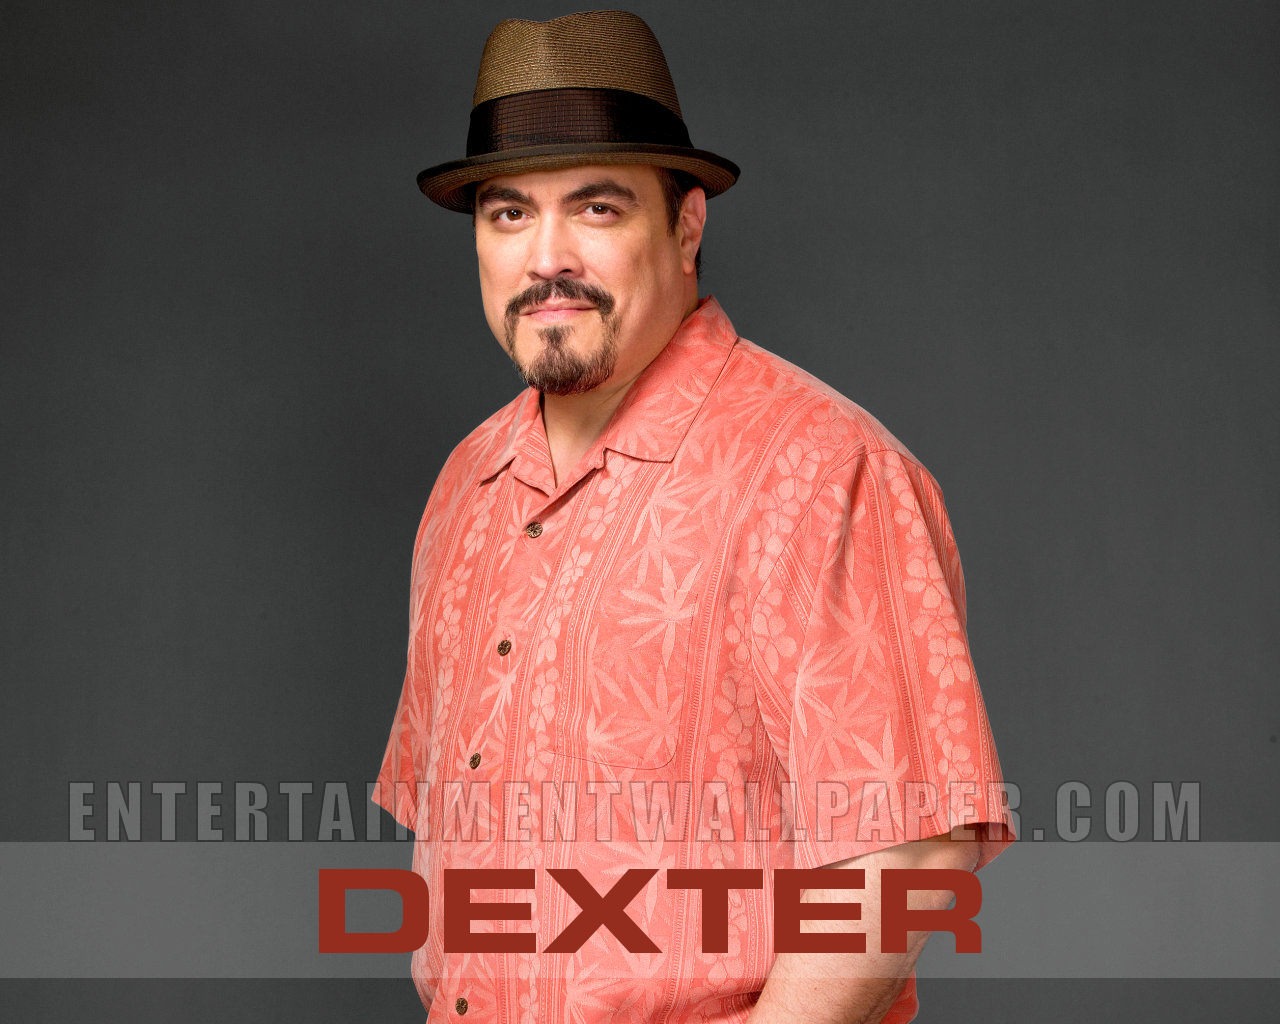 Dexter wallpaper #3 - 1280x1024